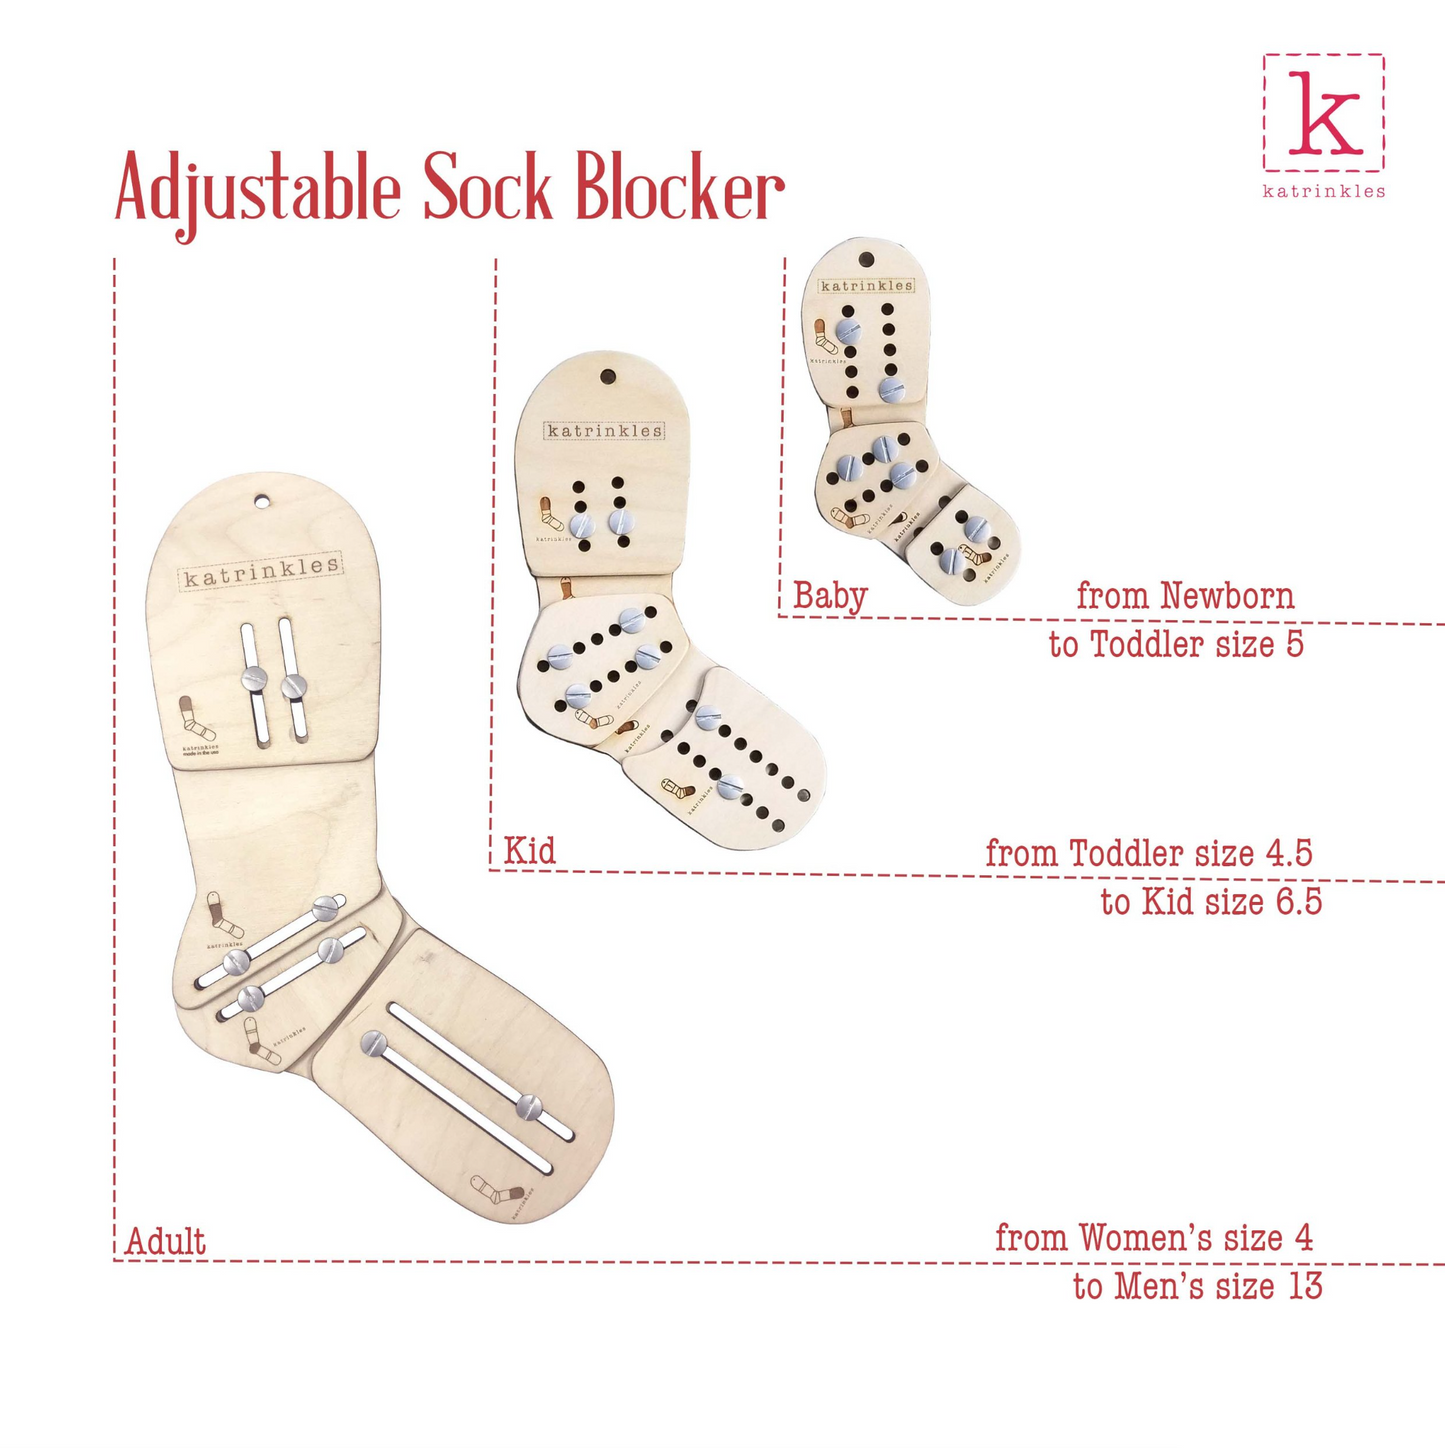 Adjustable Sock Blockers - Pair